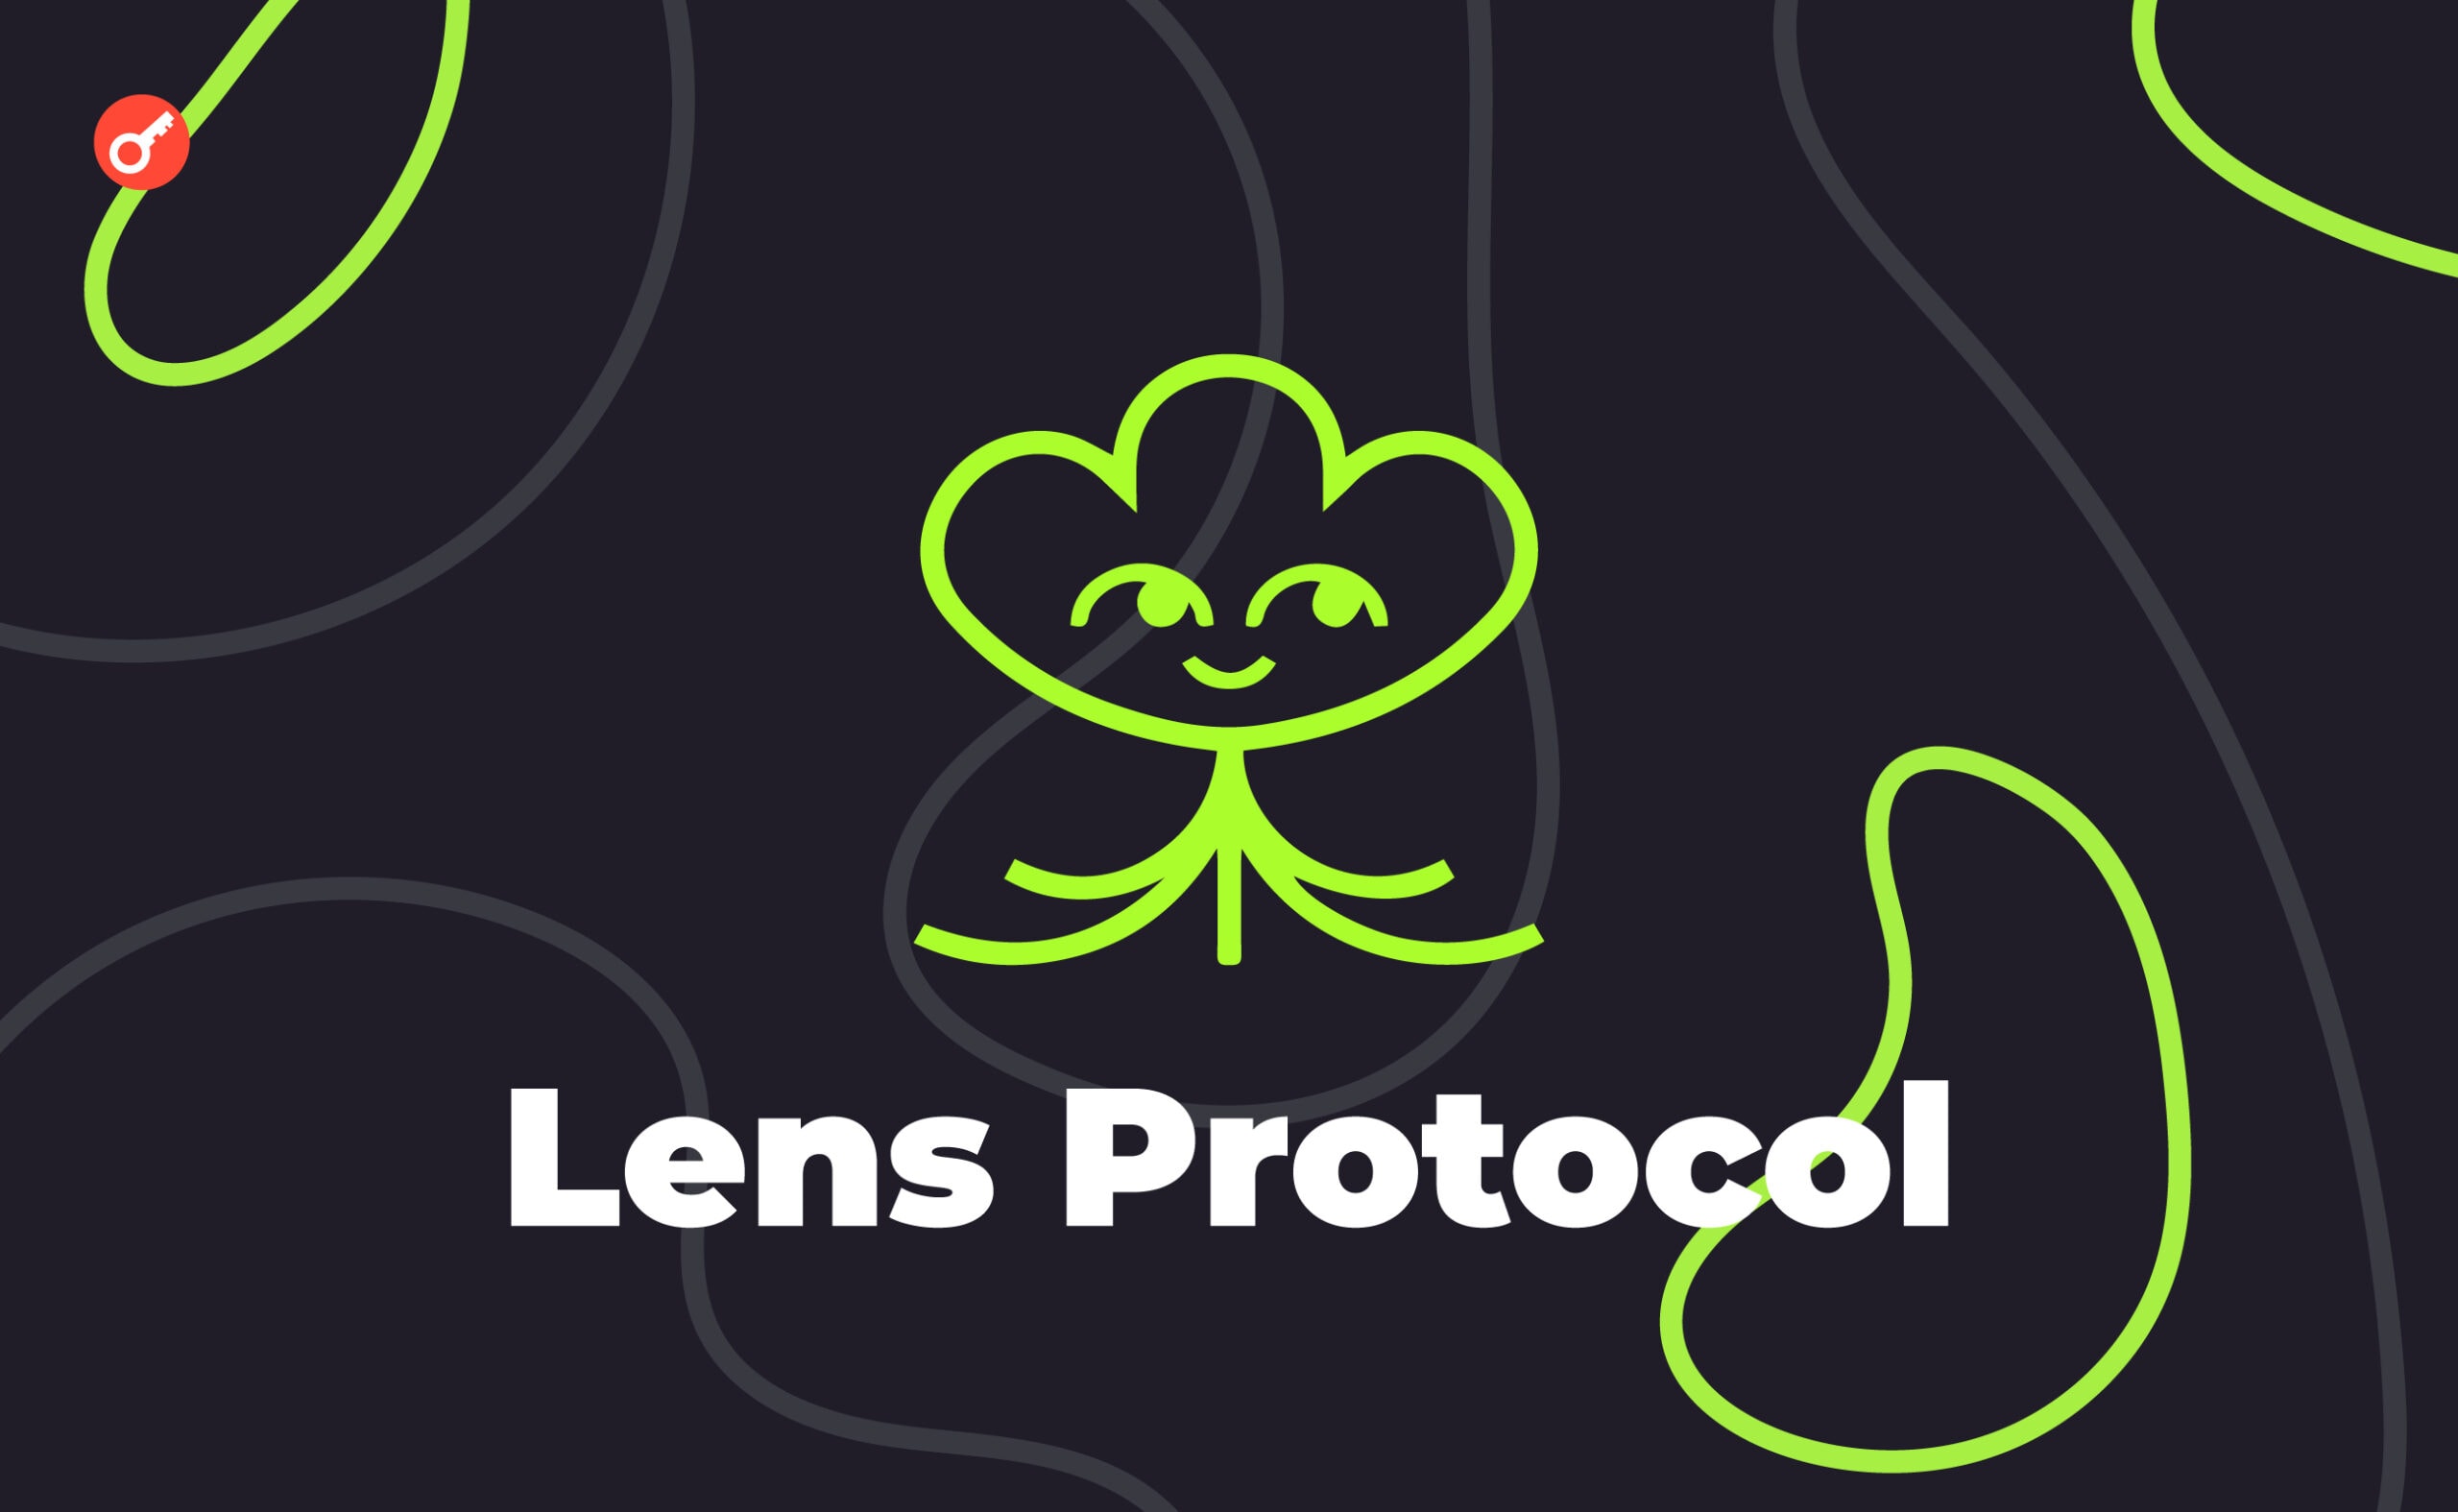 Lens Protocol випустили рішення для масштабування Bonsai. Головний колаж новини.